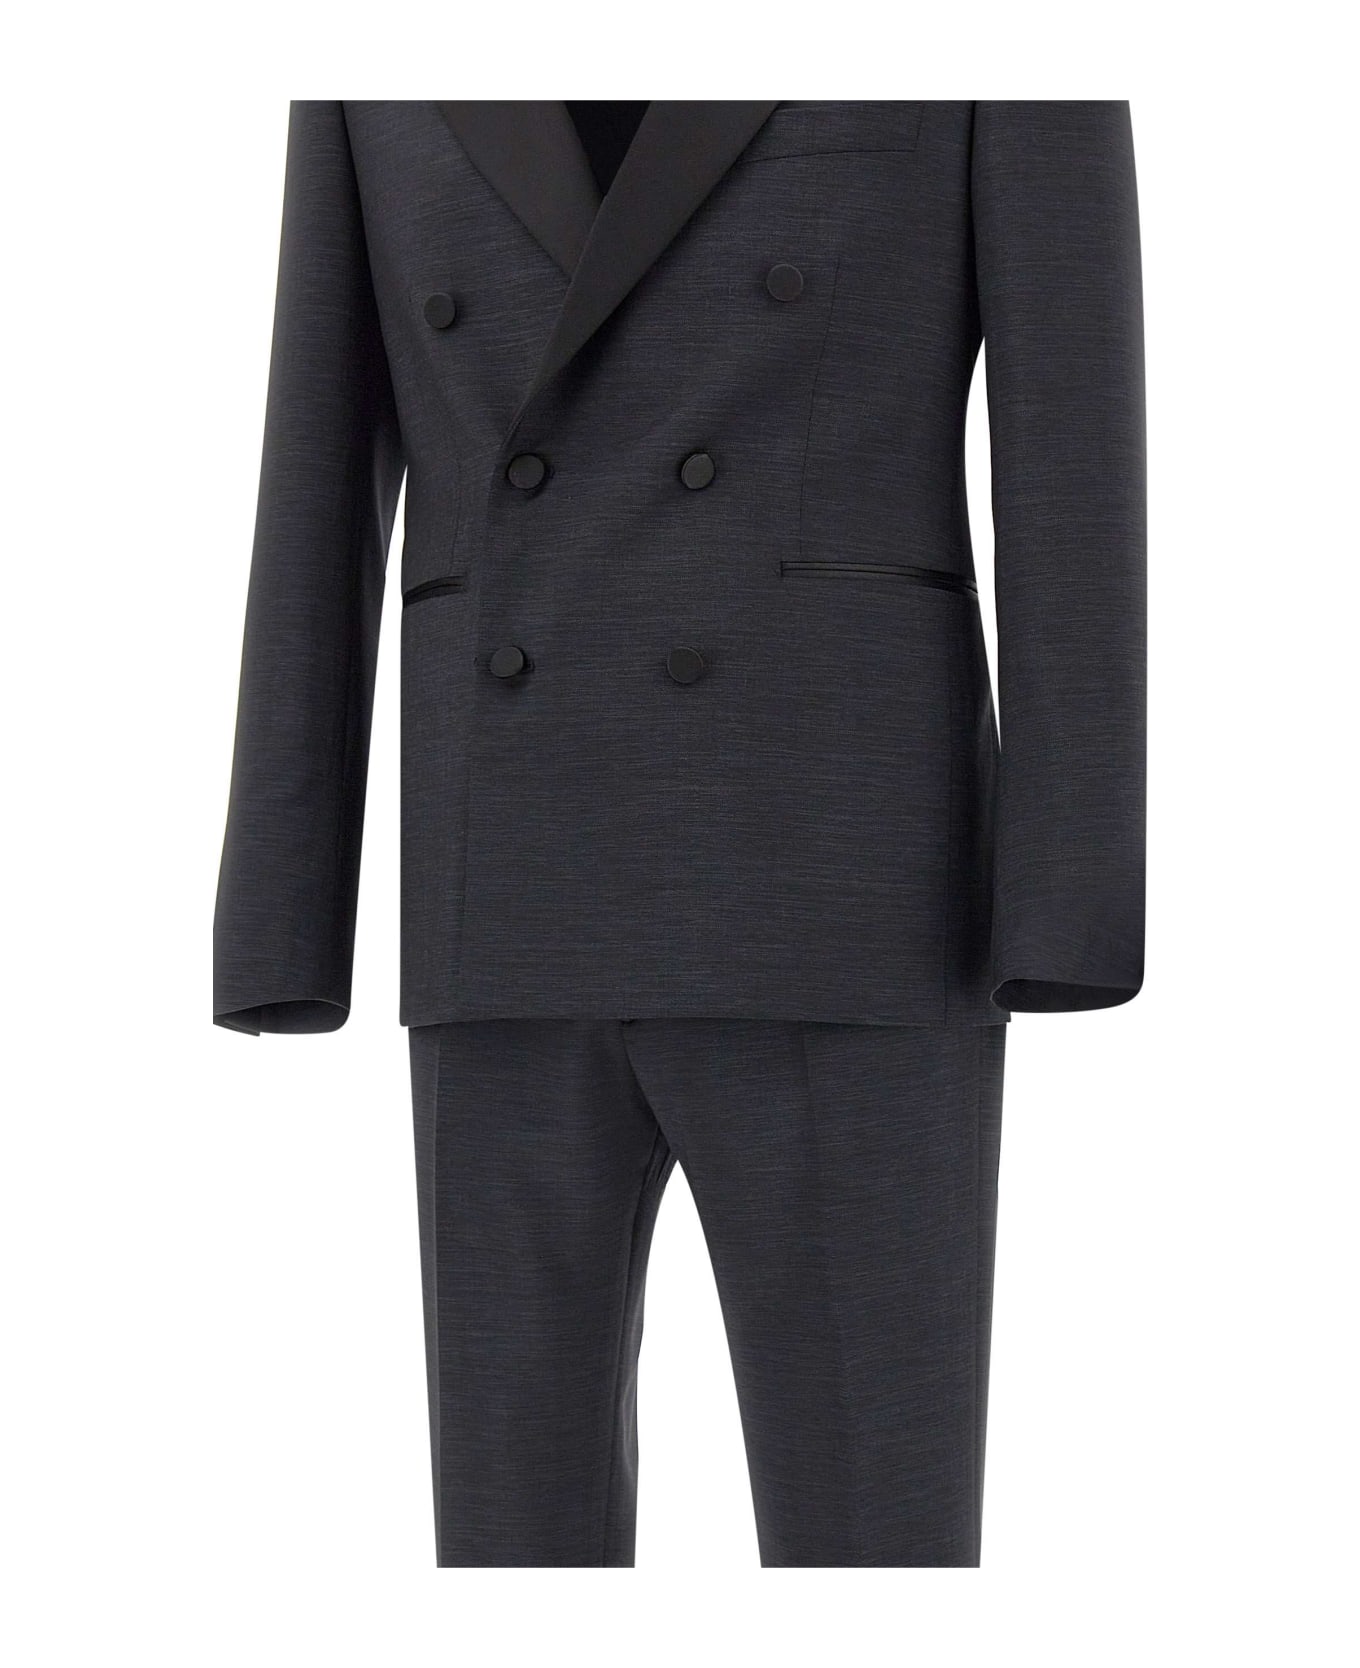 Tagliatore Two-piece Formal Suit - BLACK